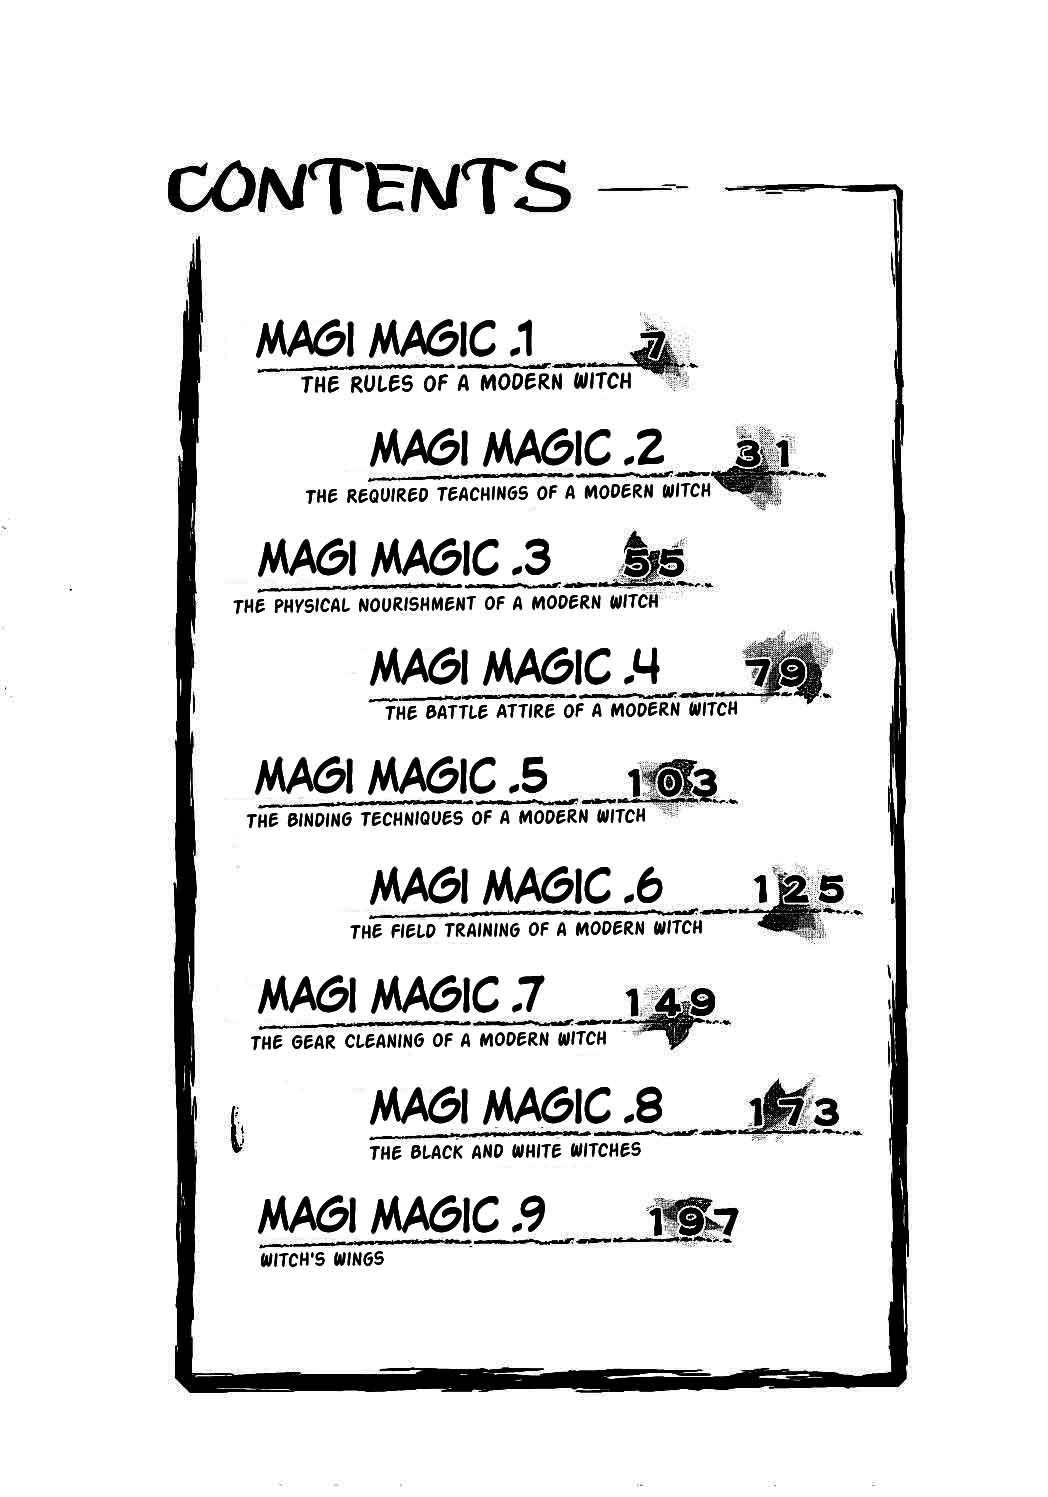 Magi magic 6